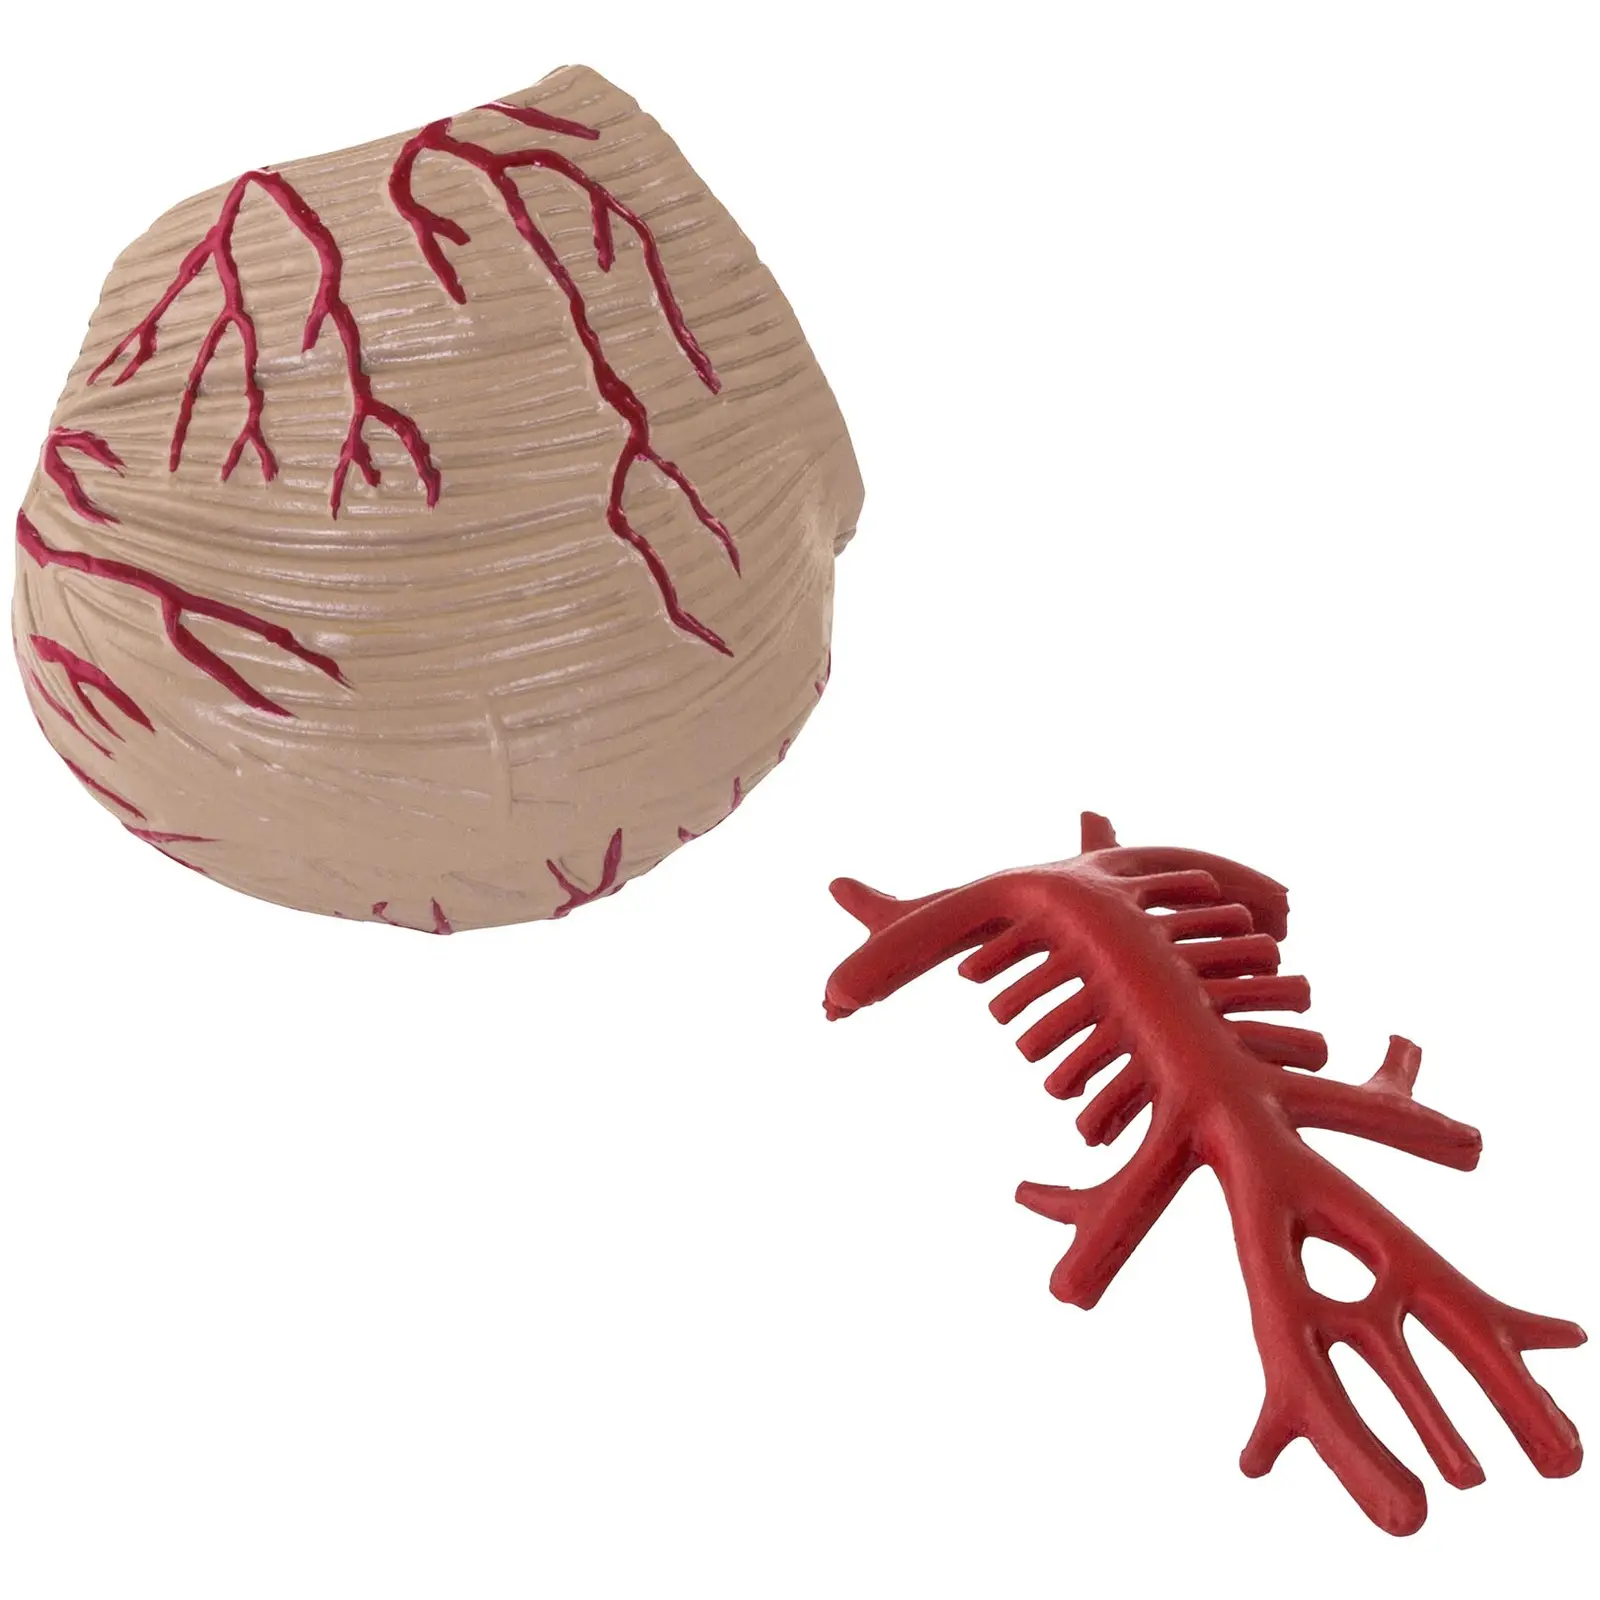 Maquette anatomique cerveau humain - 9 segments - grandeur nature